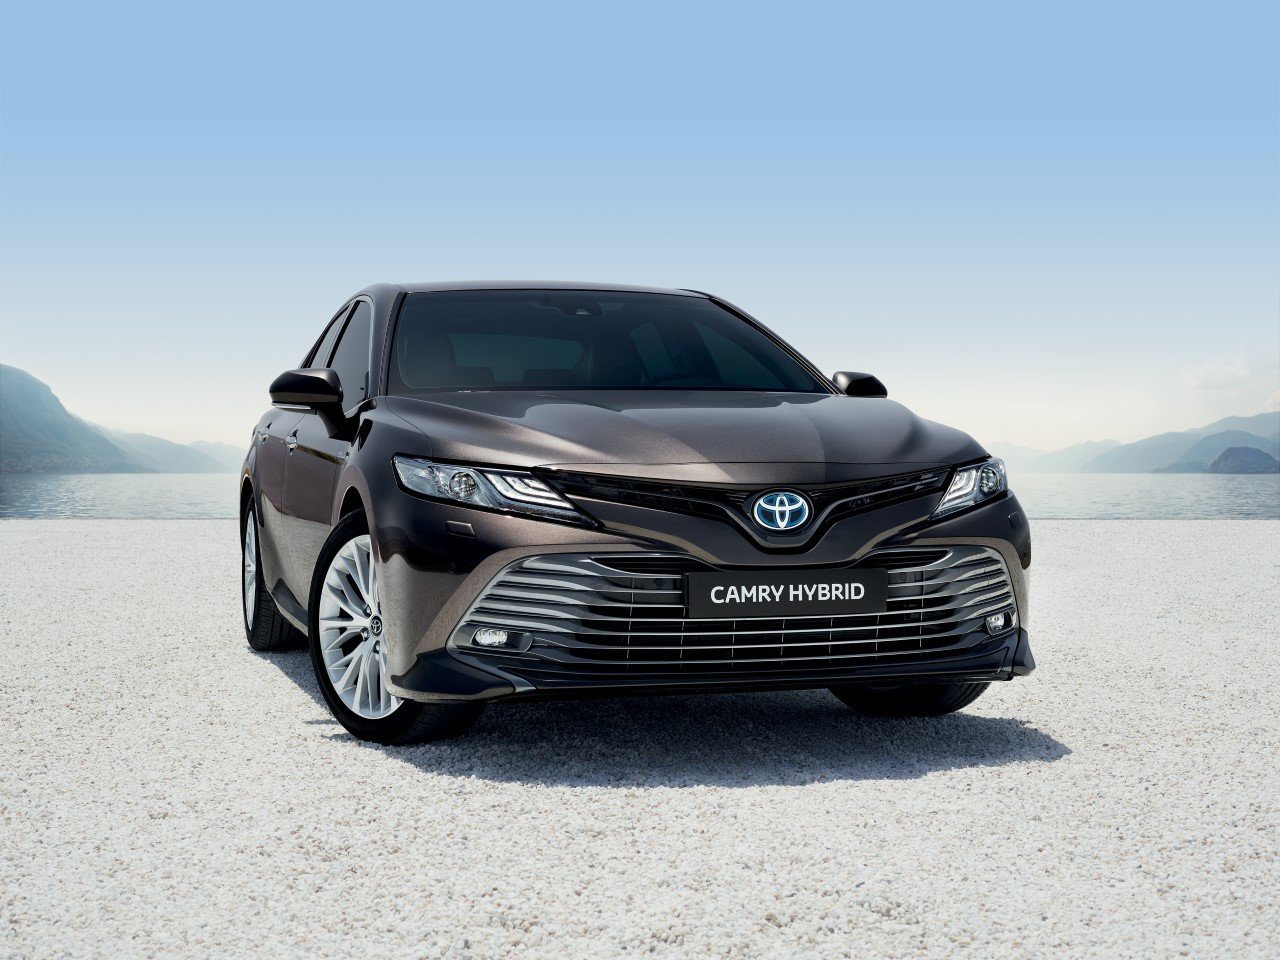 Toyota v Paříži představí jen hybridní modely